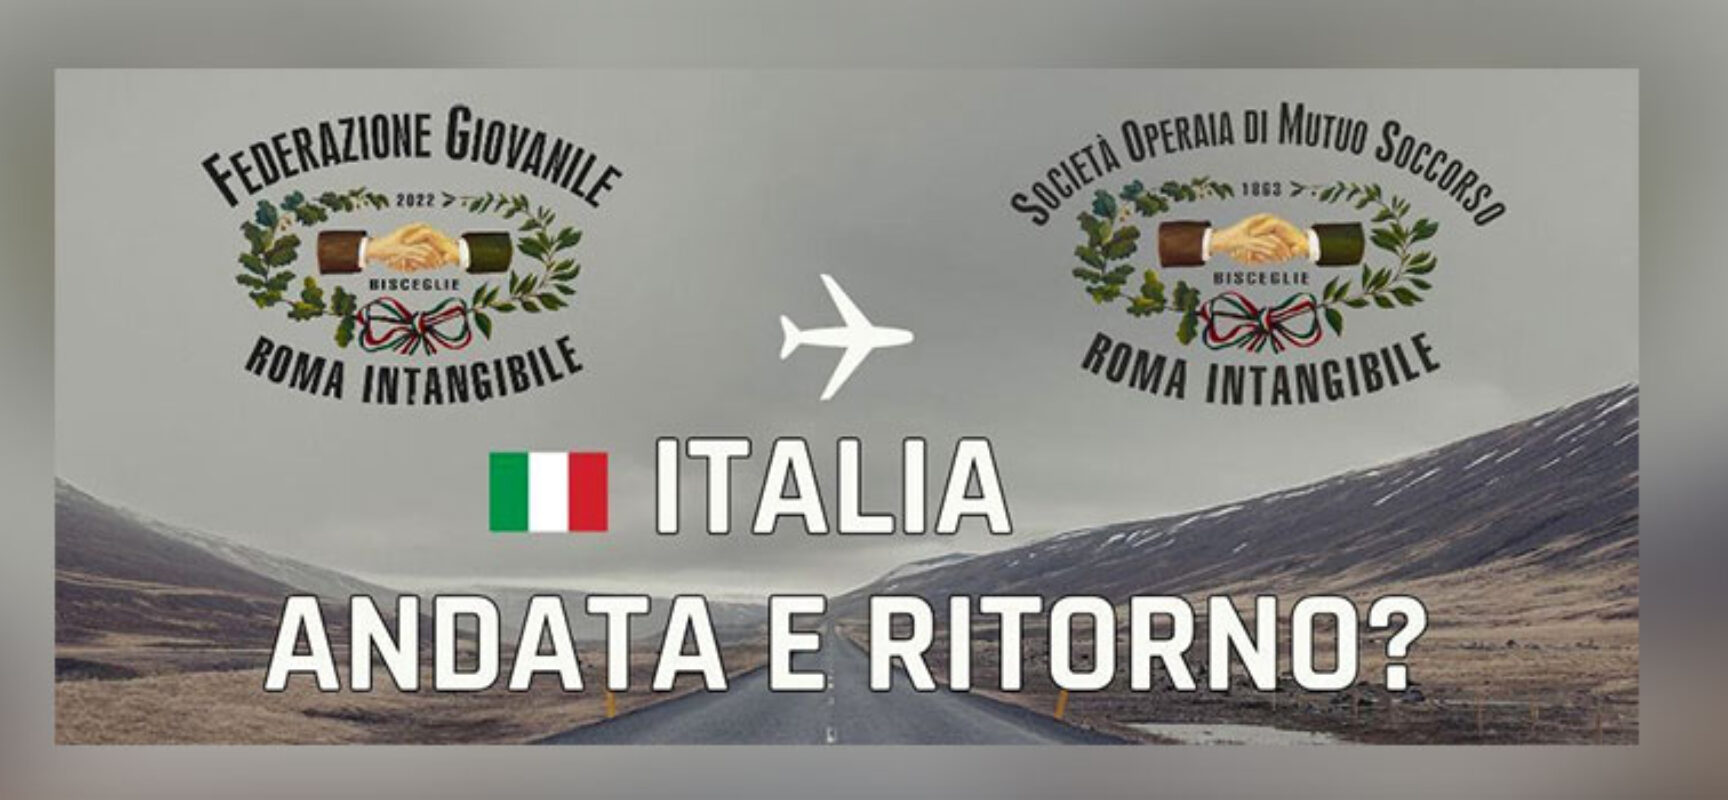 Roma Intangibile ospita convegno “Italia andata e ritorno?”